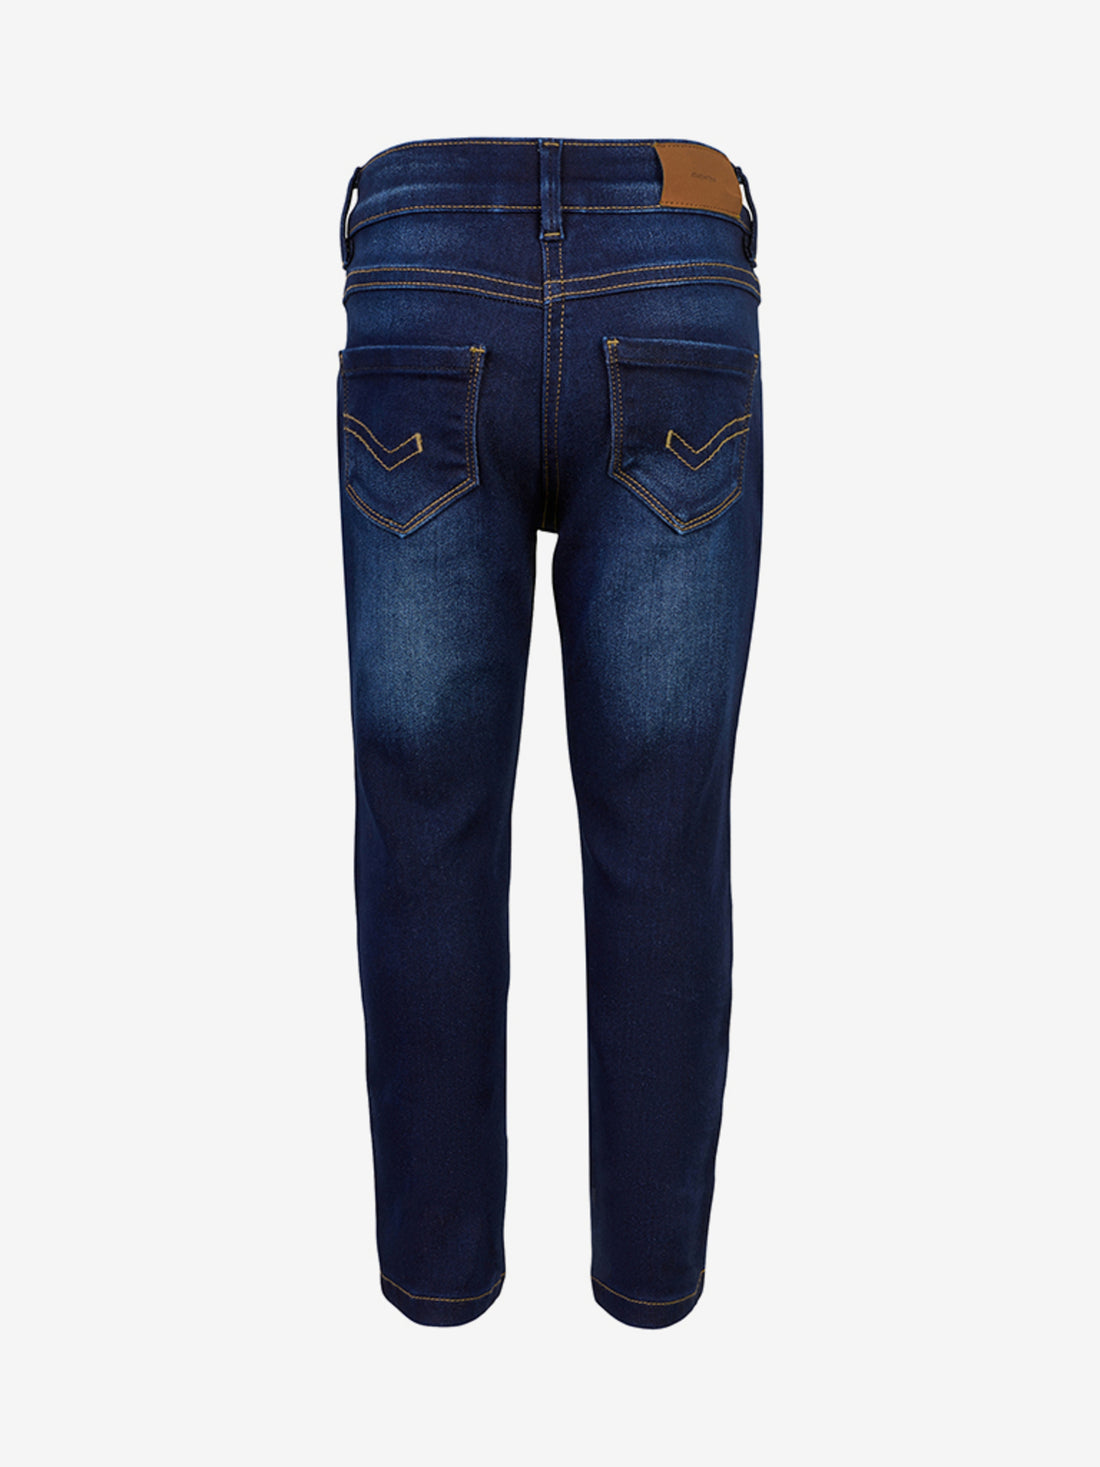 Minymo - Jeans stretch slim fit dunkelblau - AURYN Shop